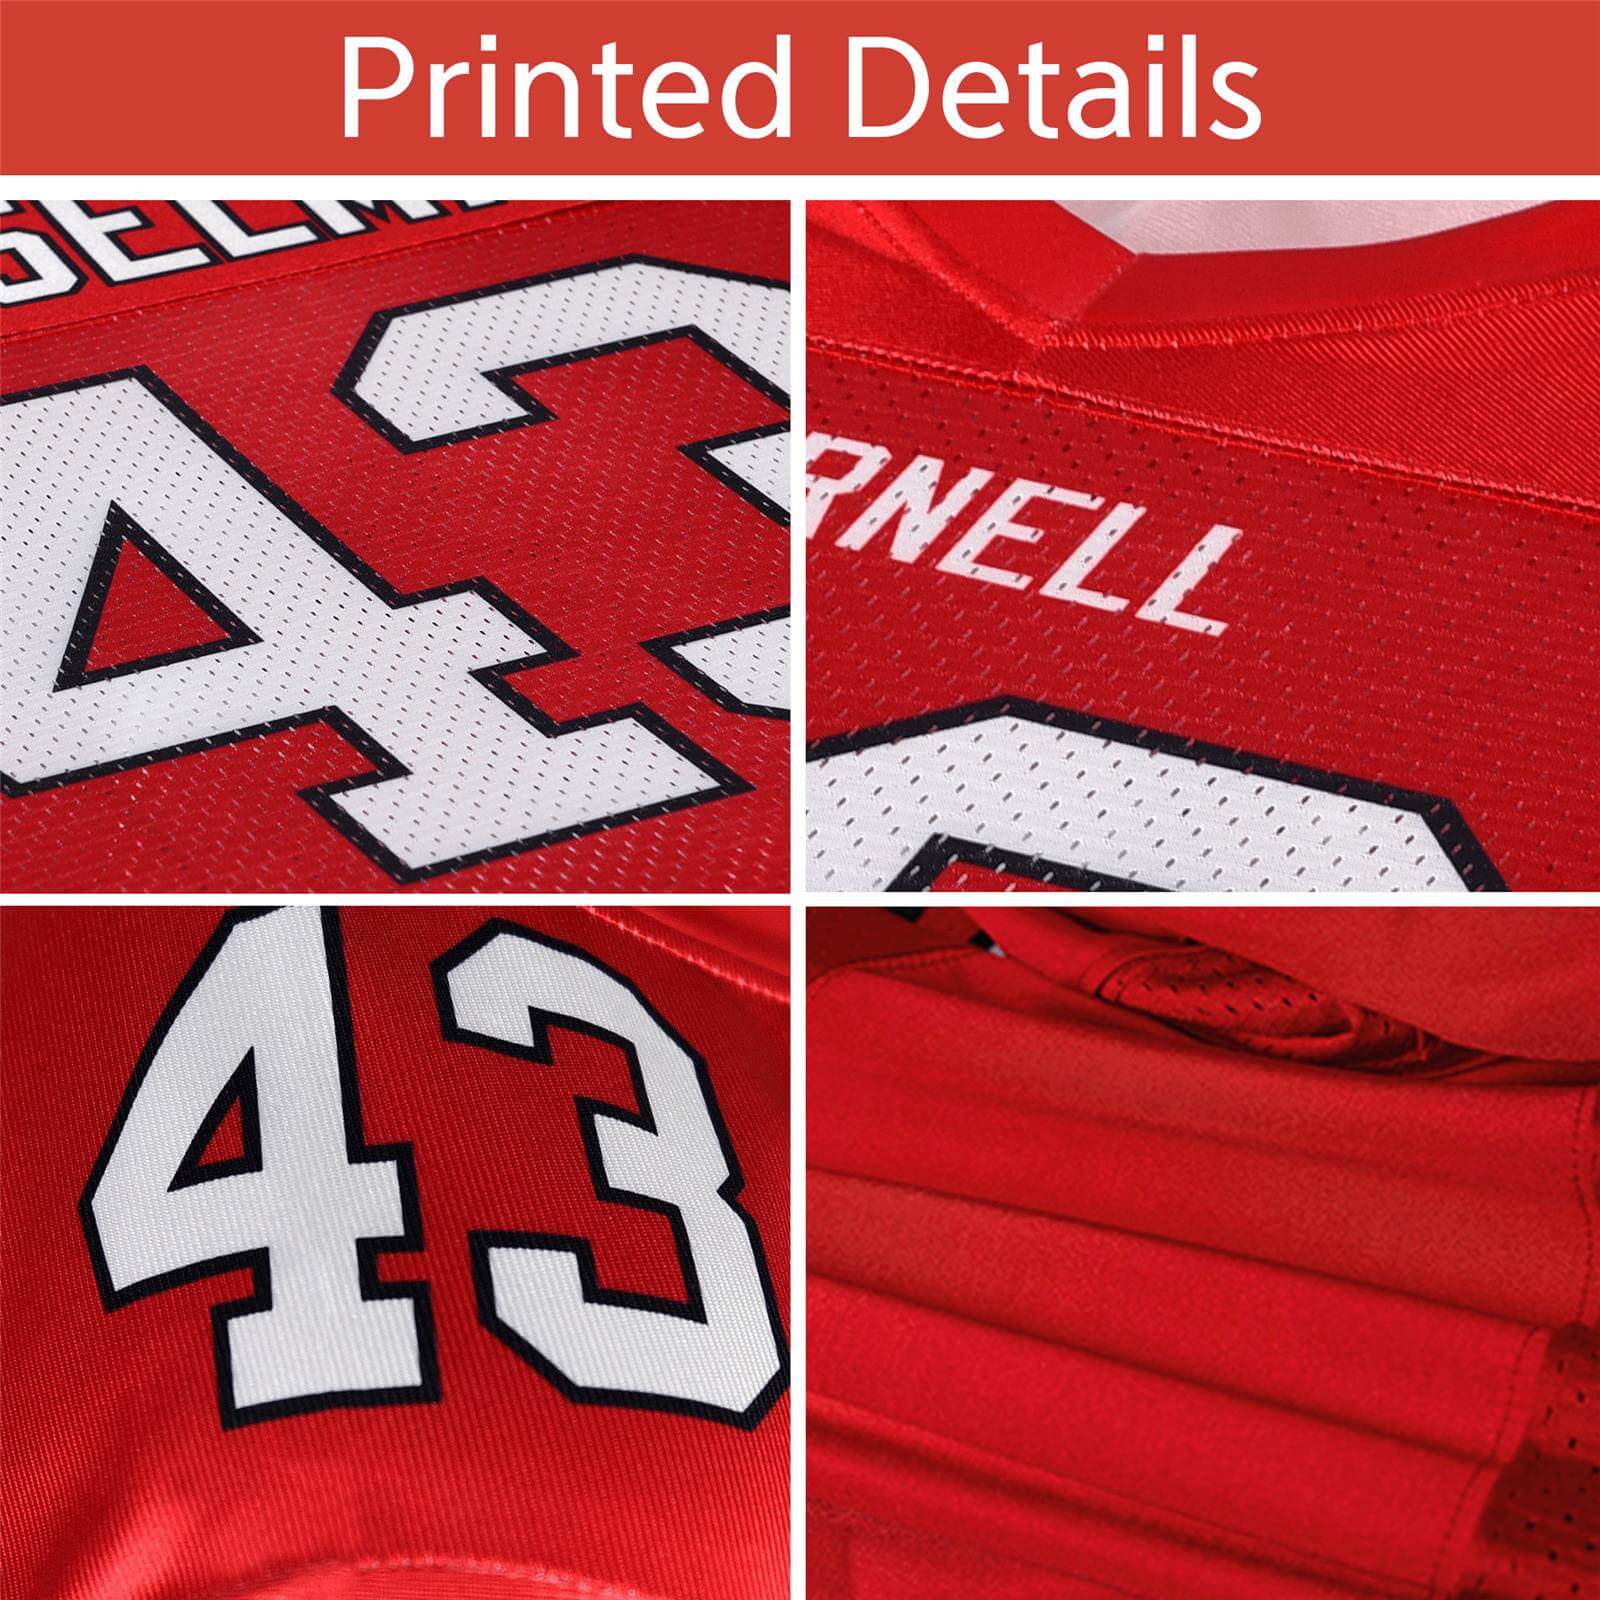 custom football jerseys printed details